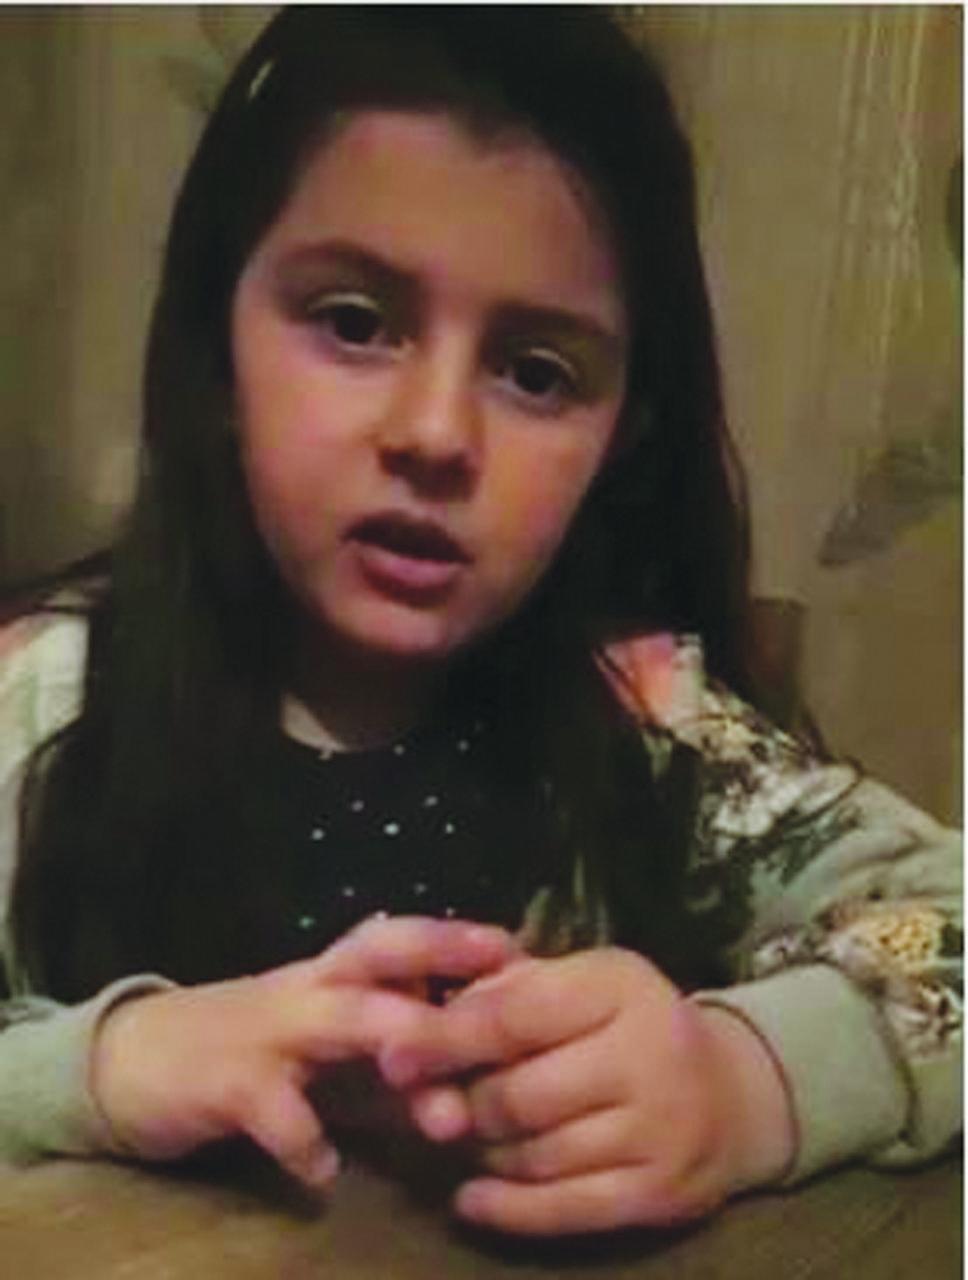 Azerbaijani girl from occcupied Shusha makes heartfelt video